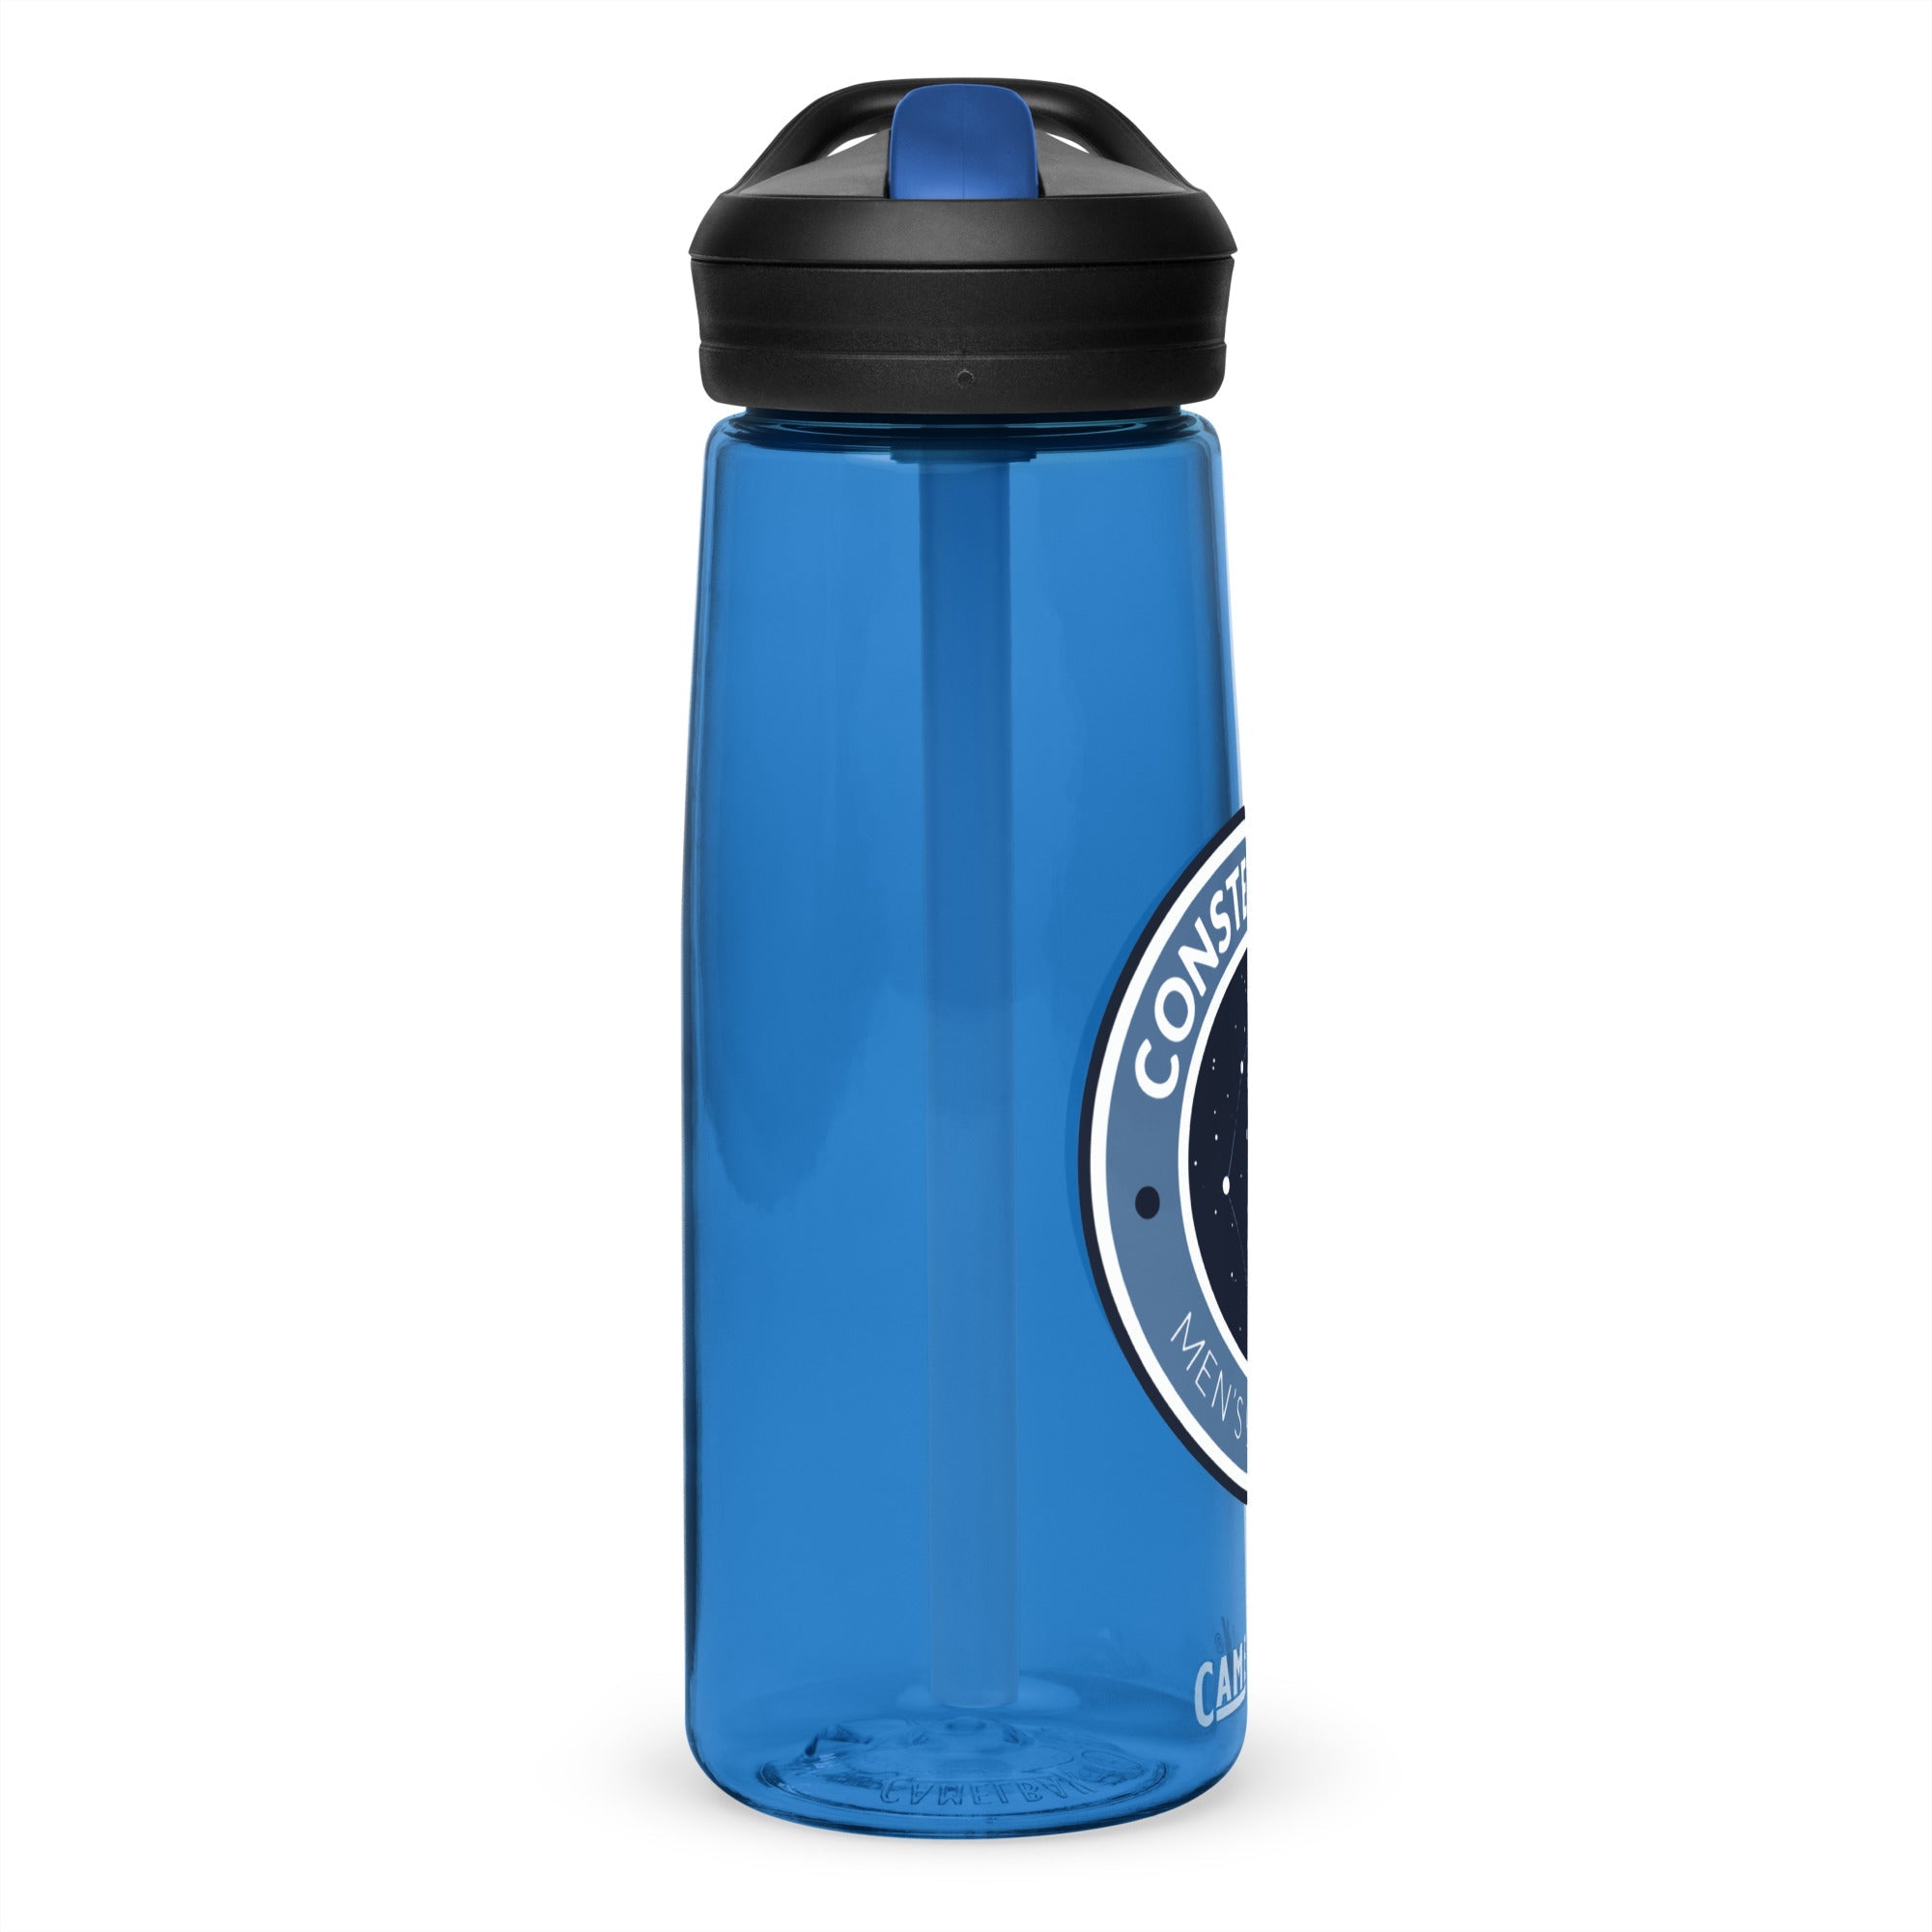 CME Sports water bottle